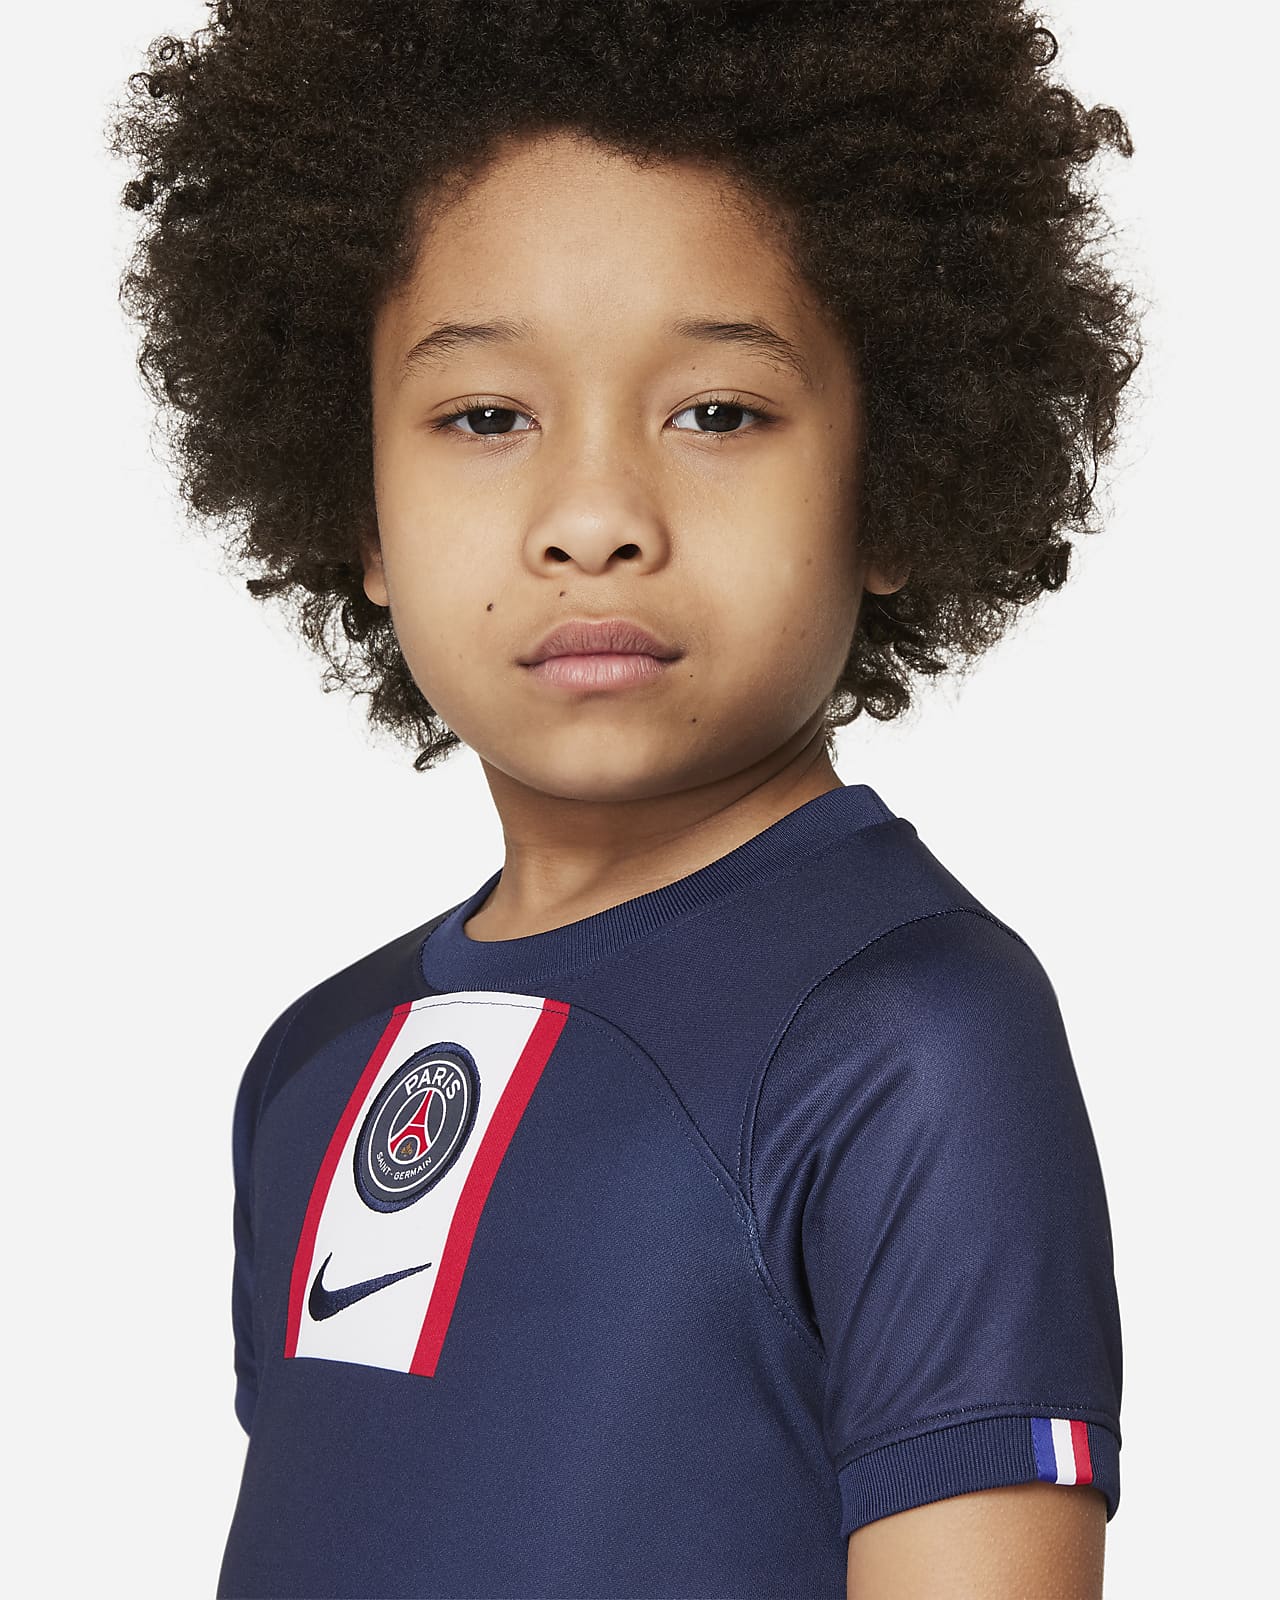 zwak Manoeuvreren financiën Paris Saint-Germain 2022/23 Home Little Kids' Soccer Kit. Nike.com